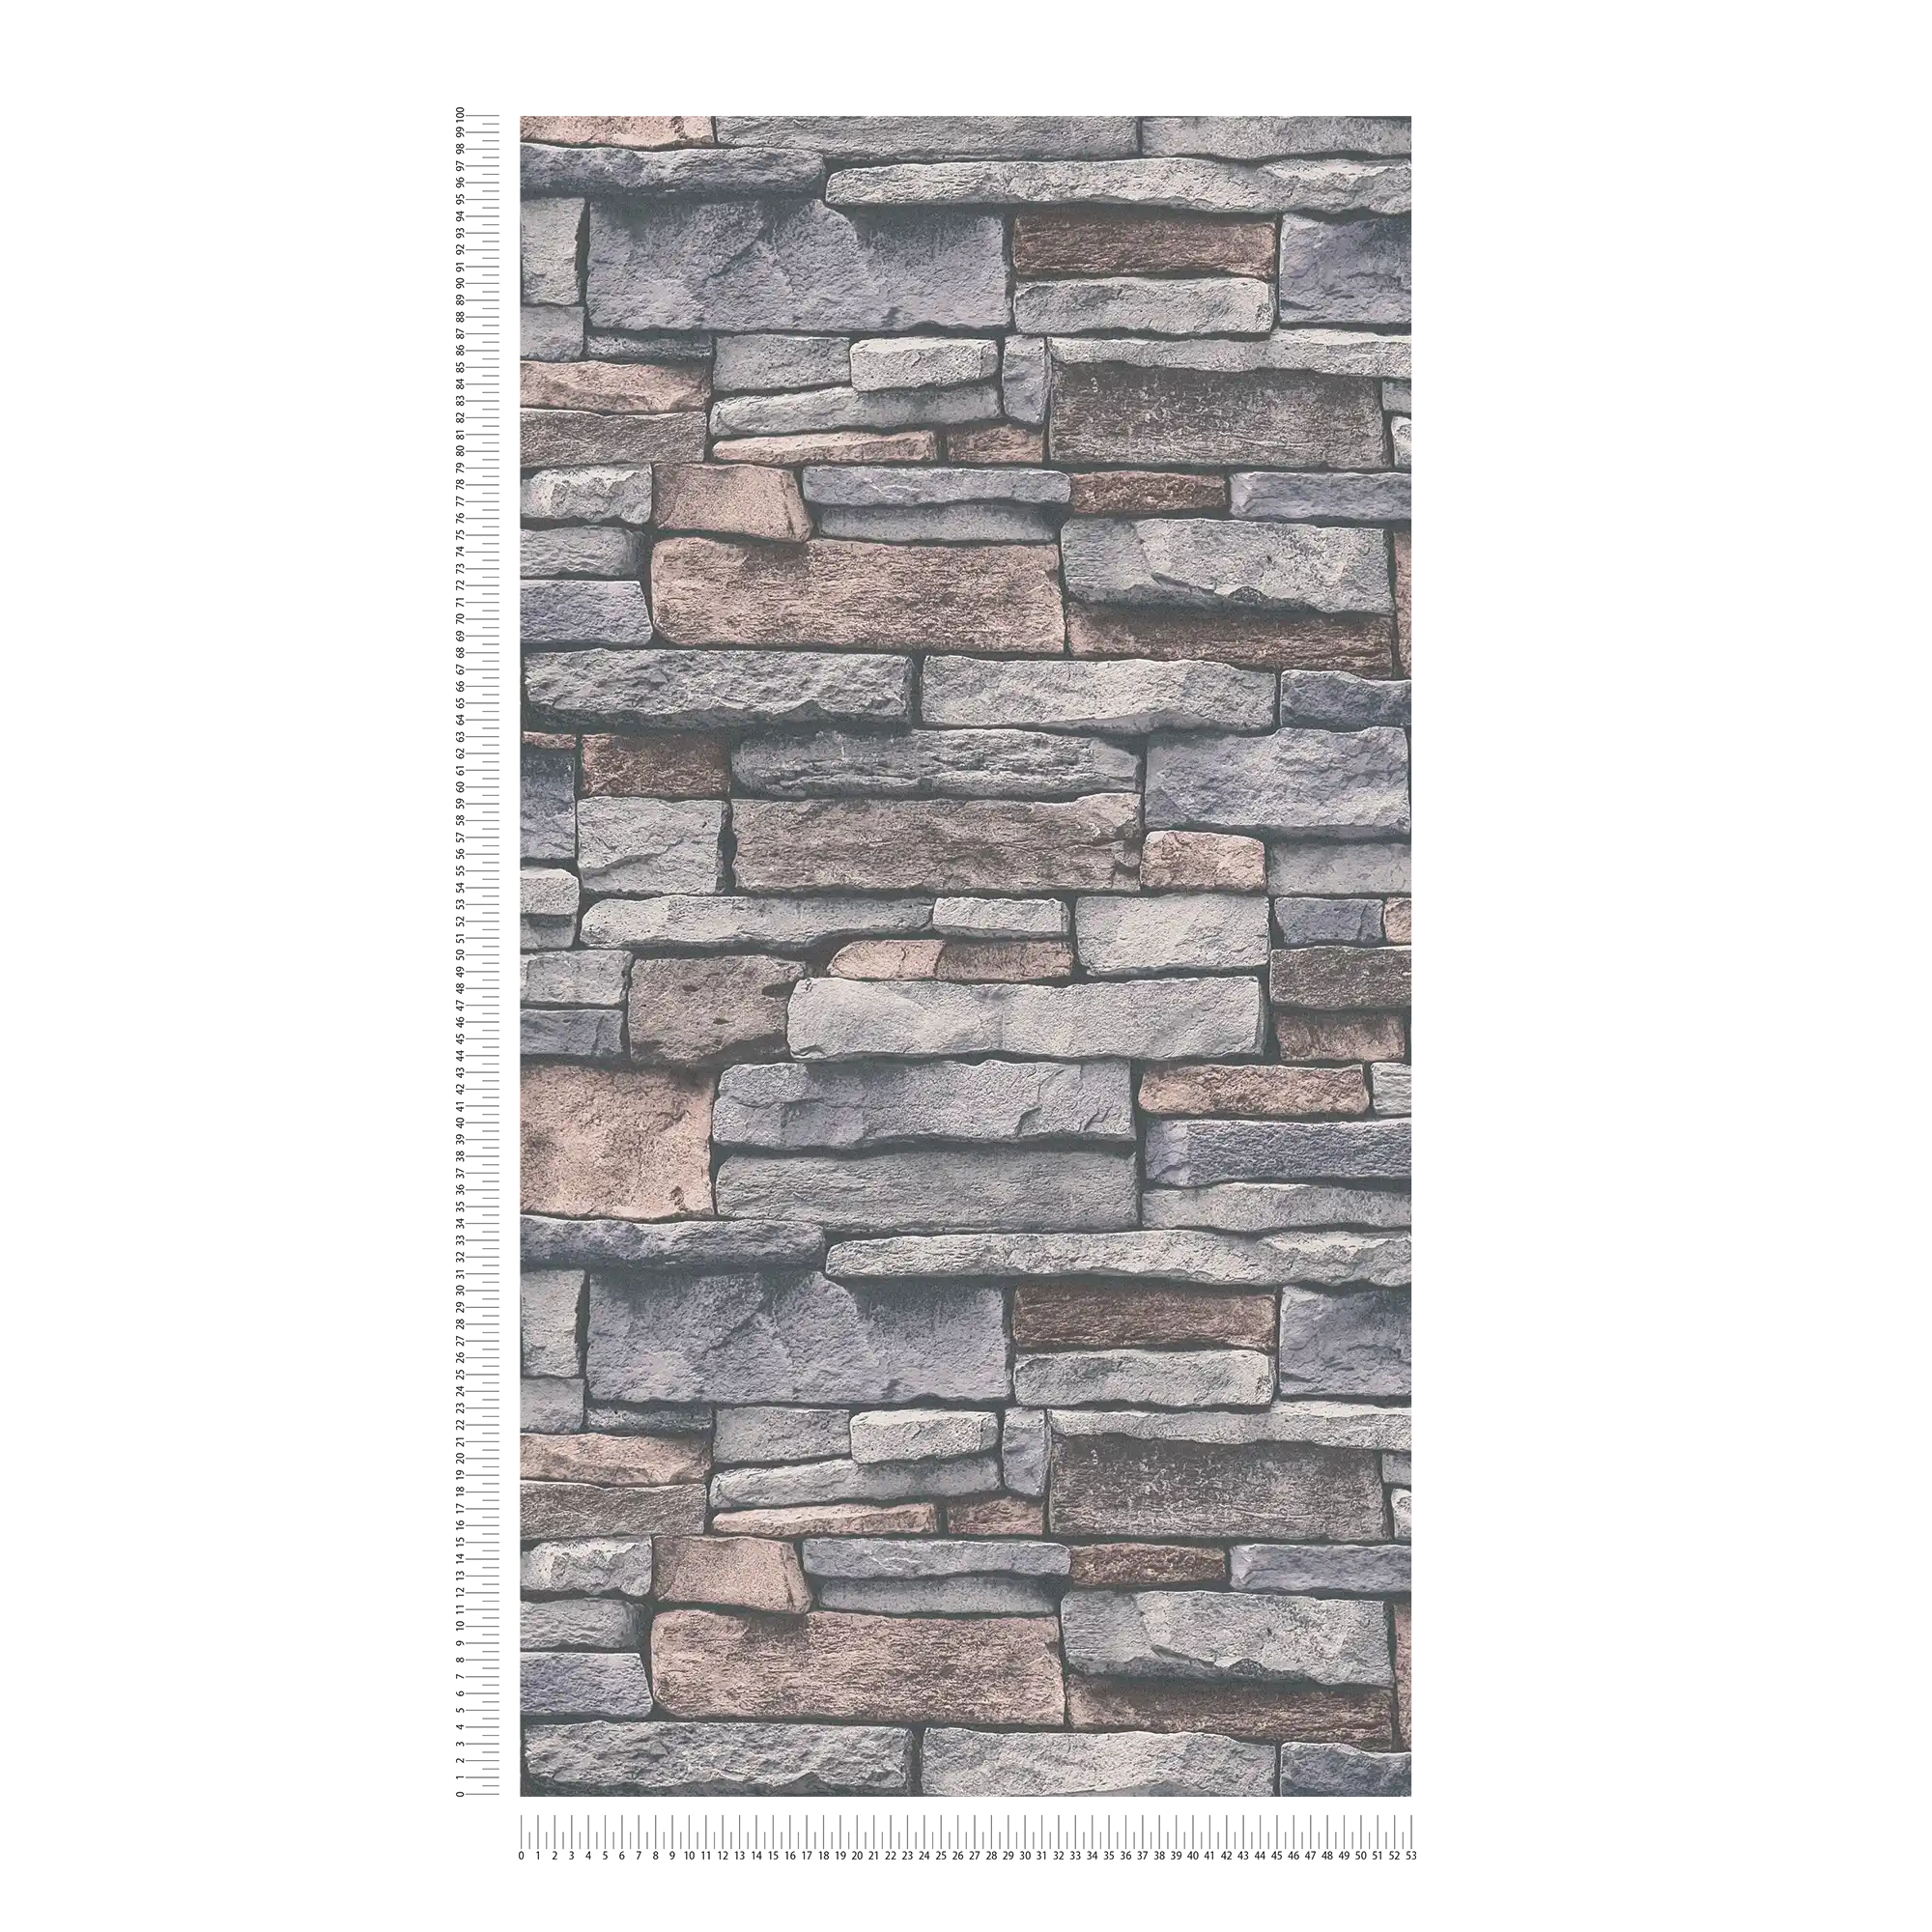             Vliesbehang in steenlook met natuurstenen muur - grijs, beige, bruin
        